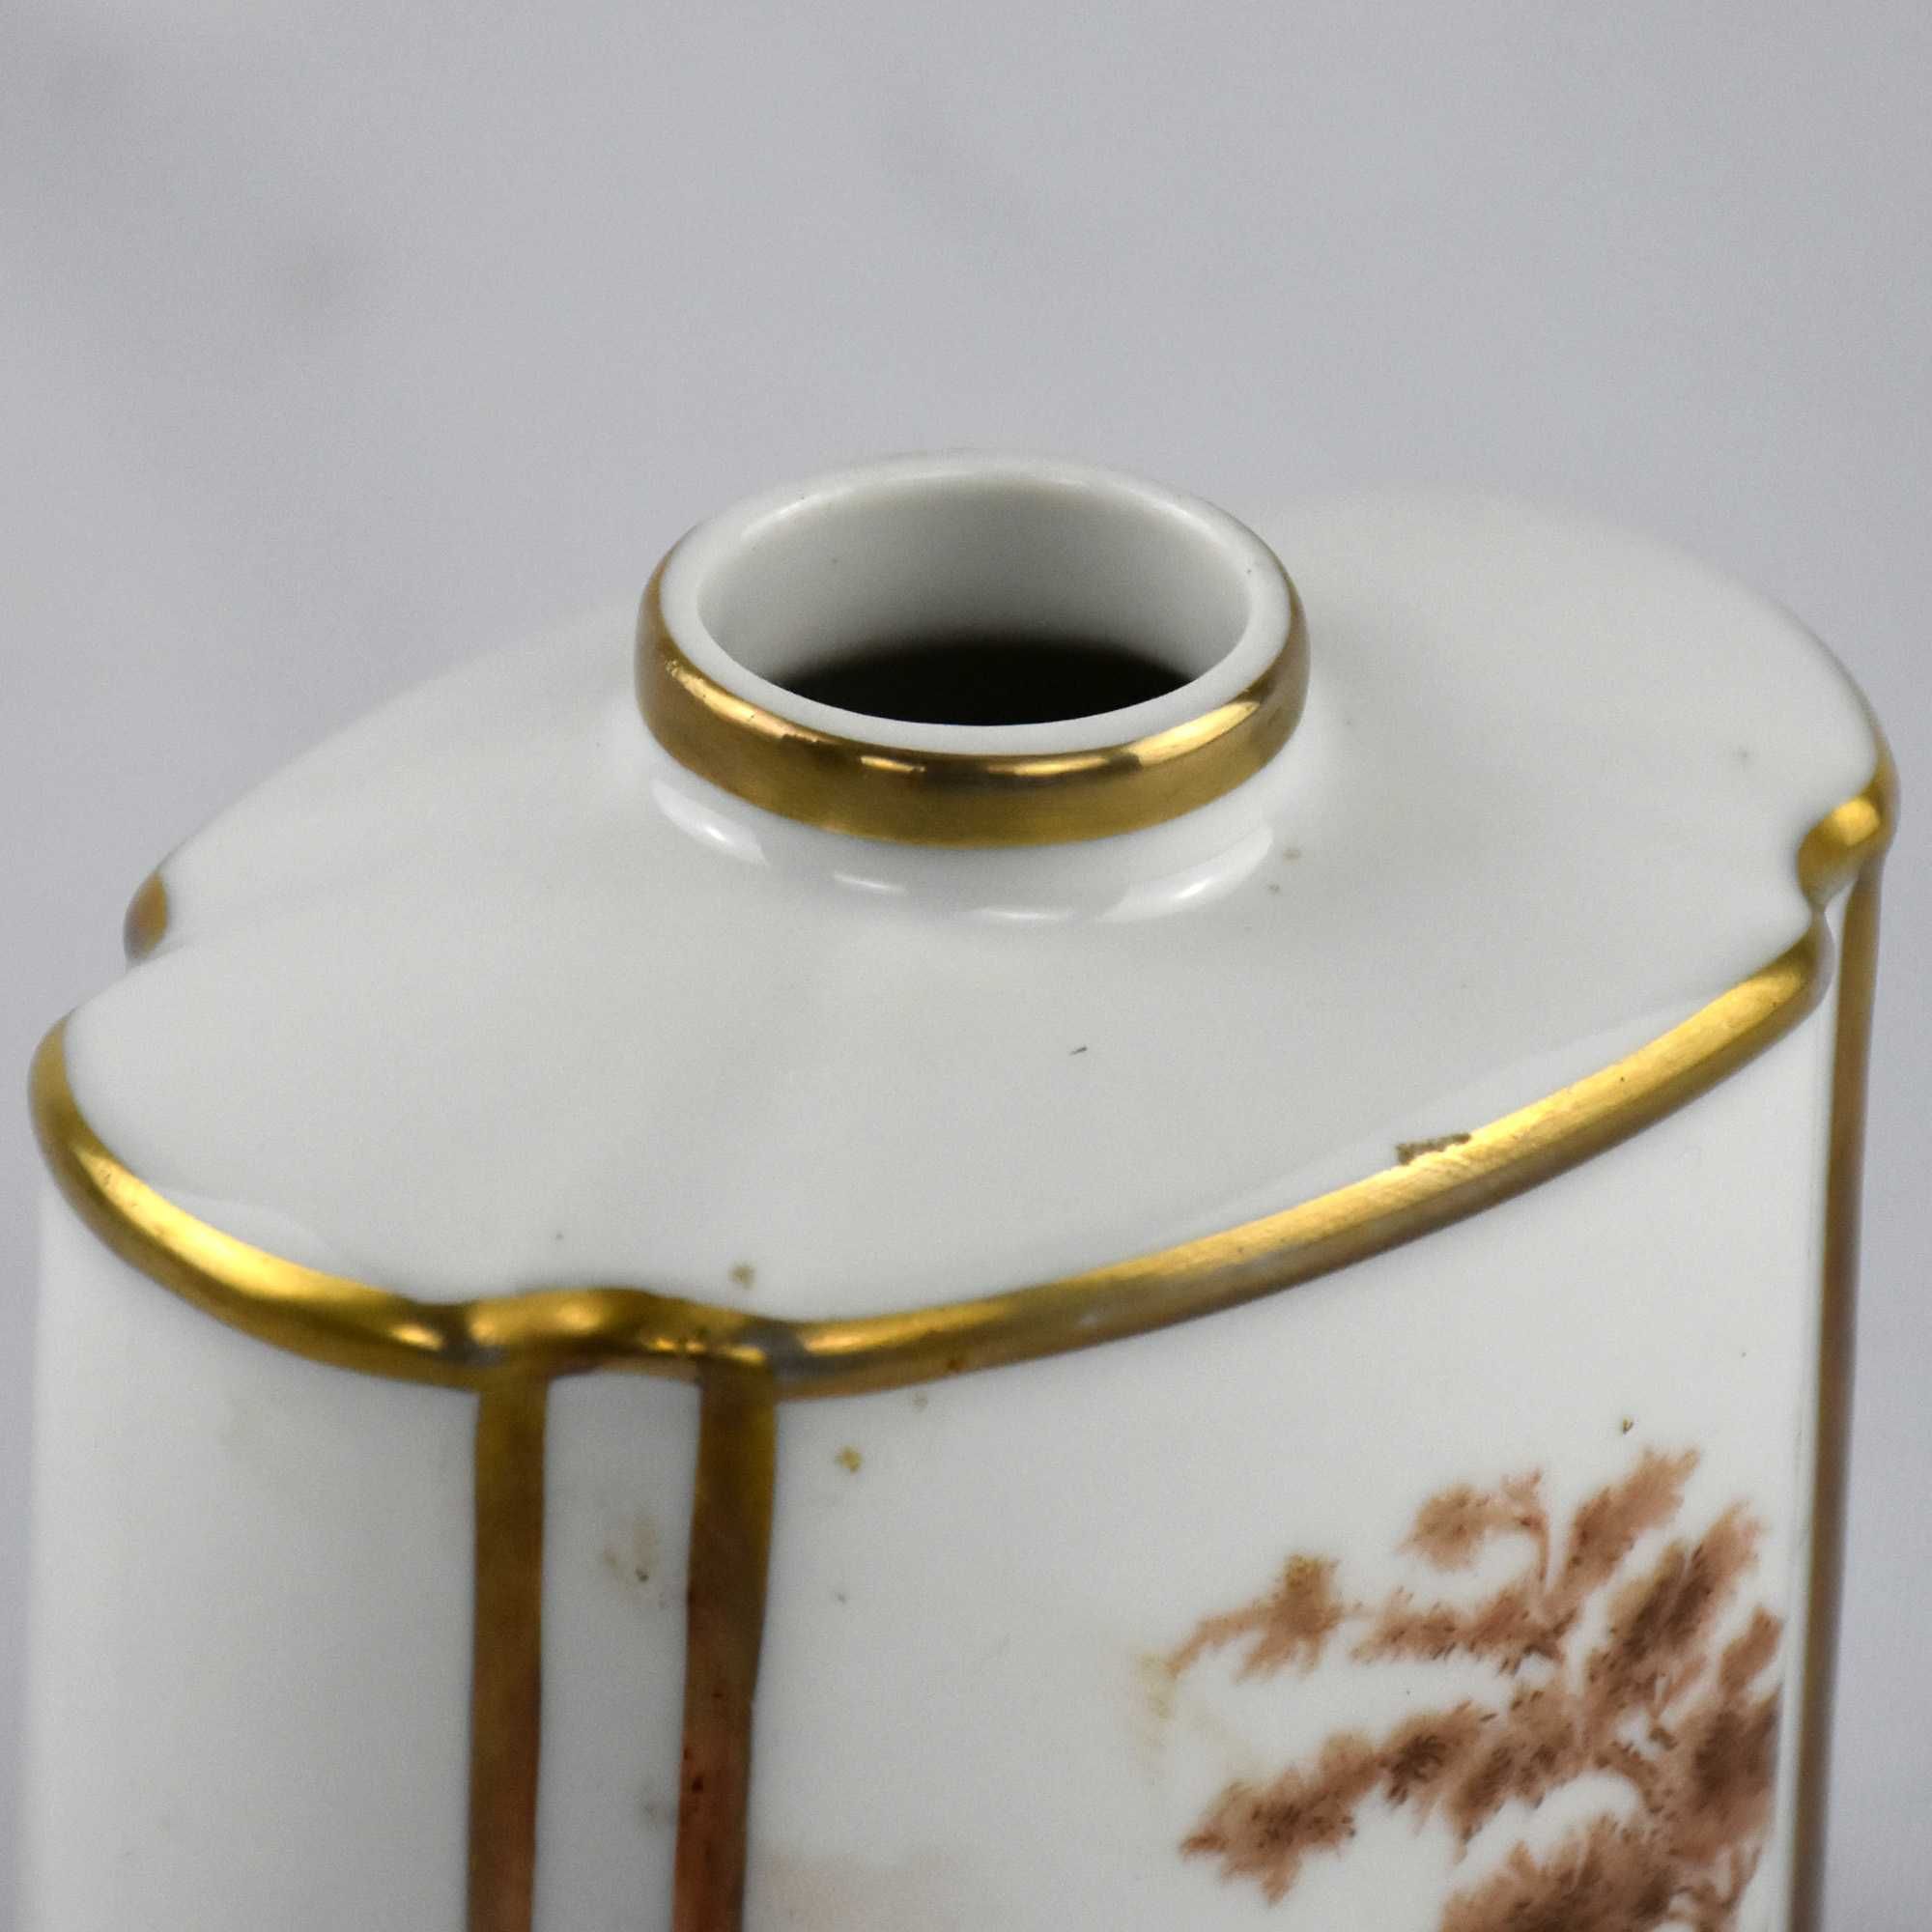 Frasco de perfume em porcelana decorado com paisagens e friso a ouro